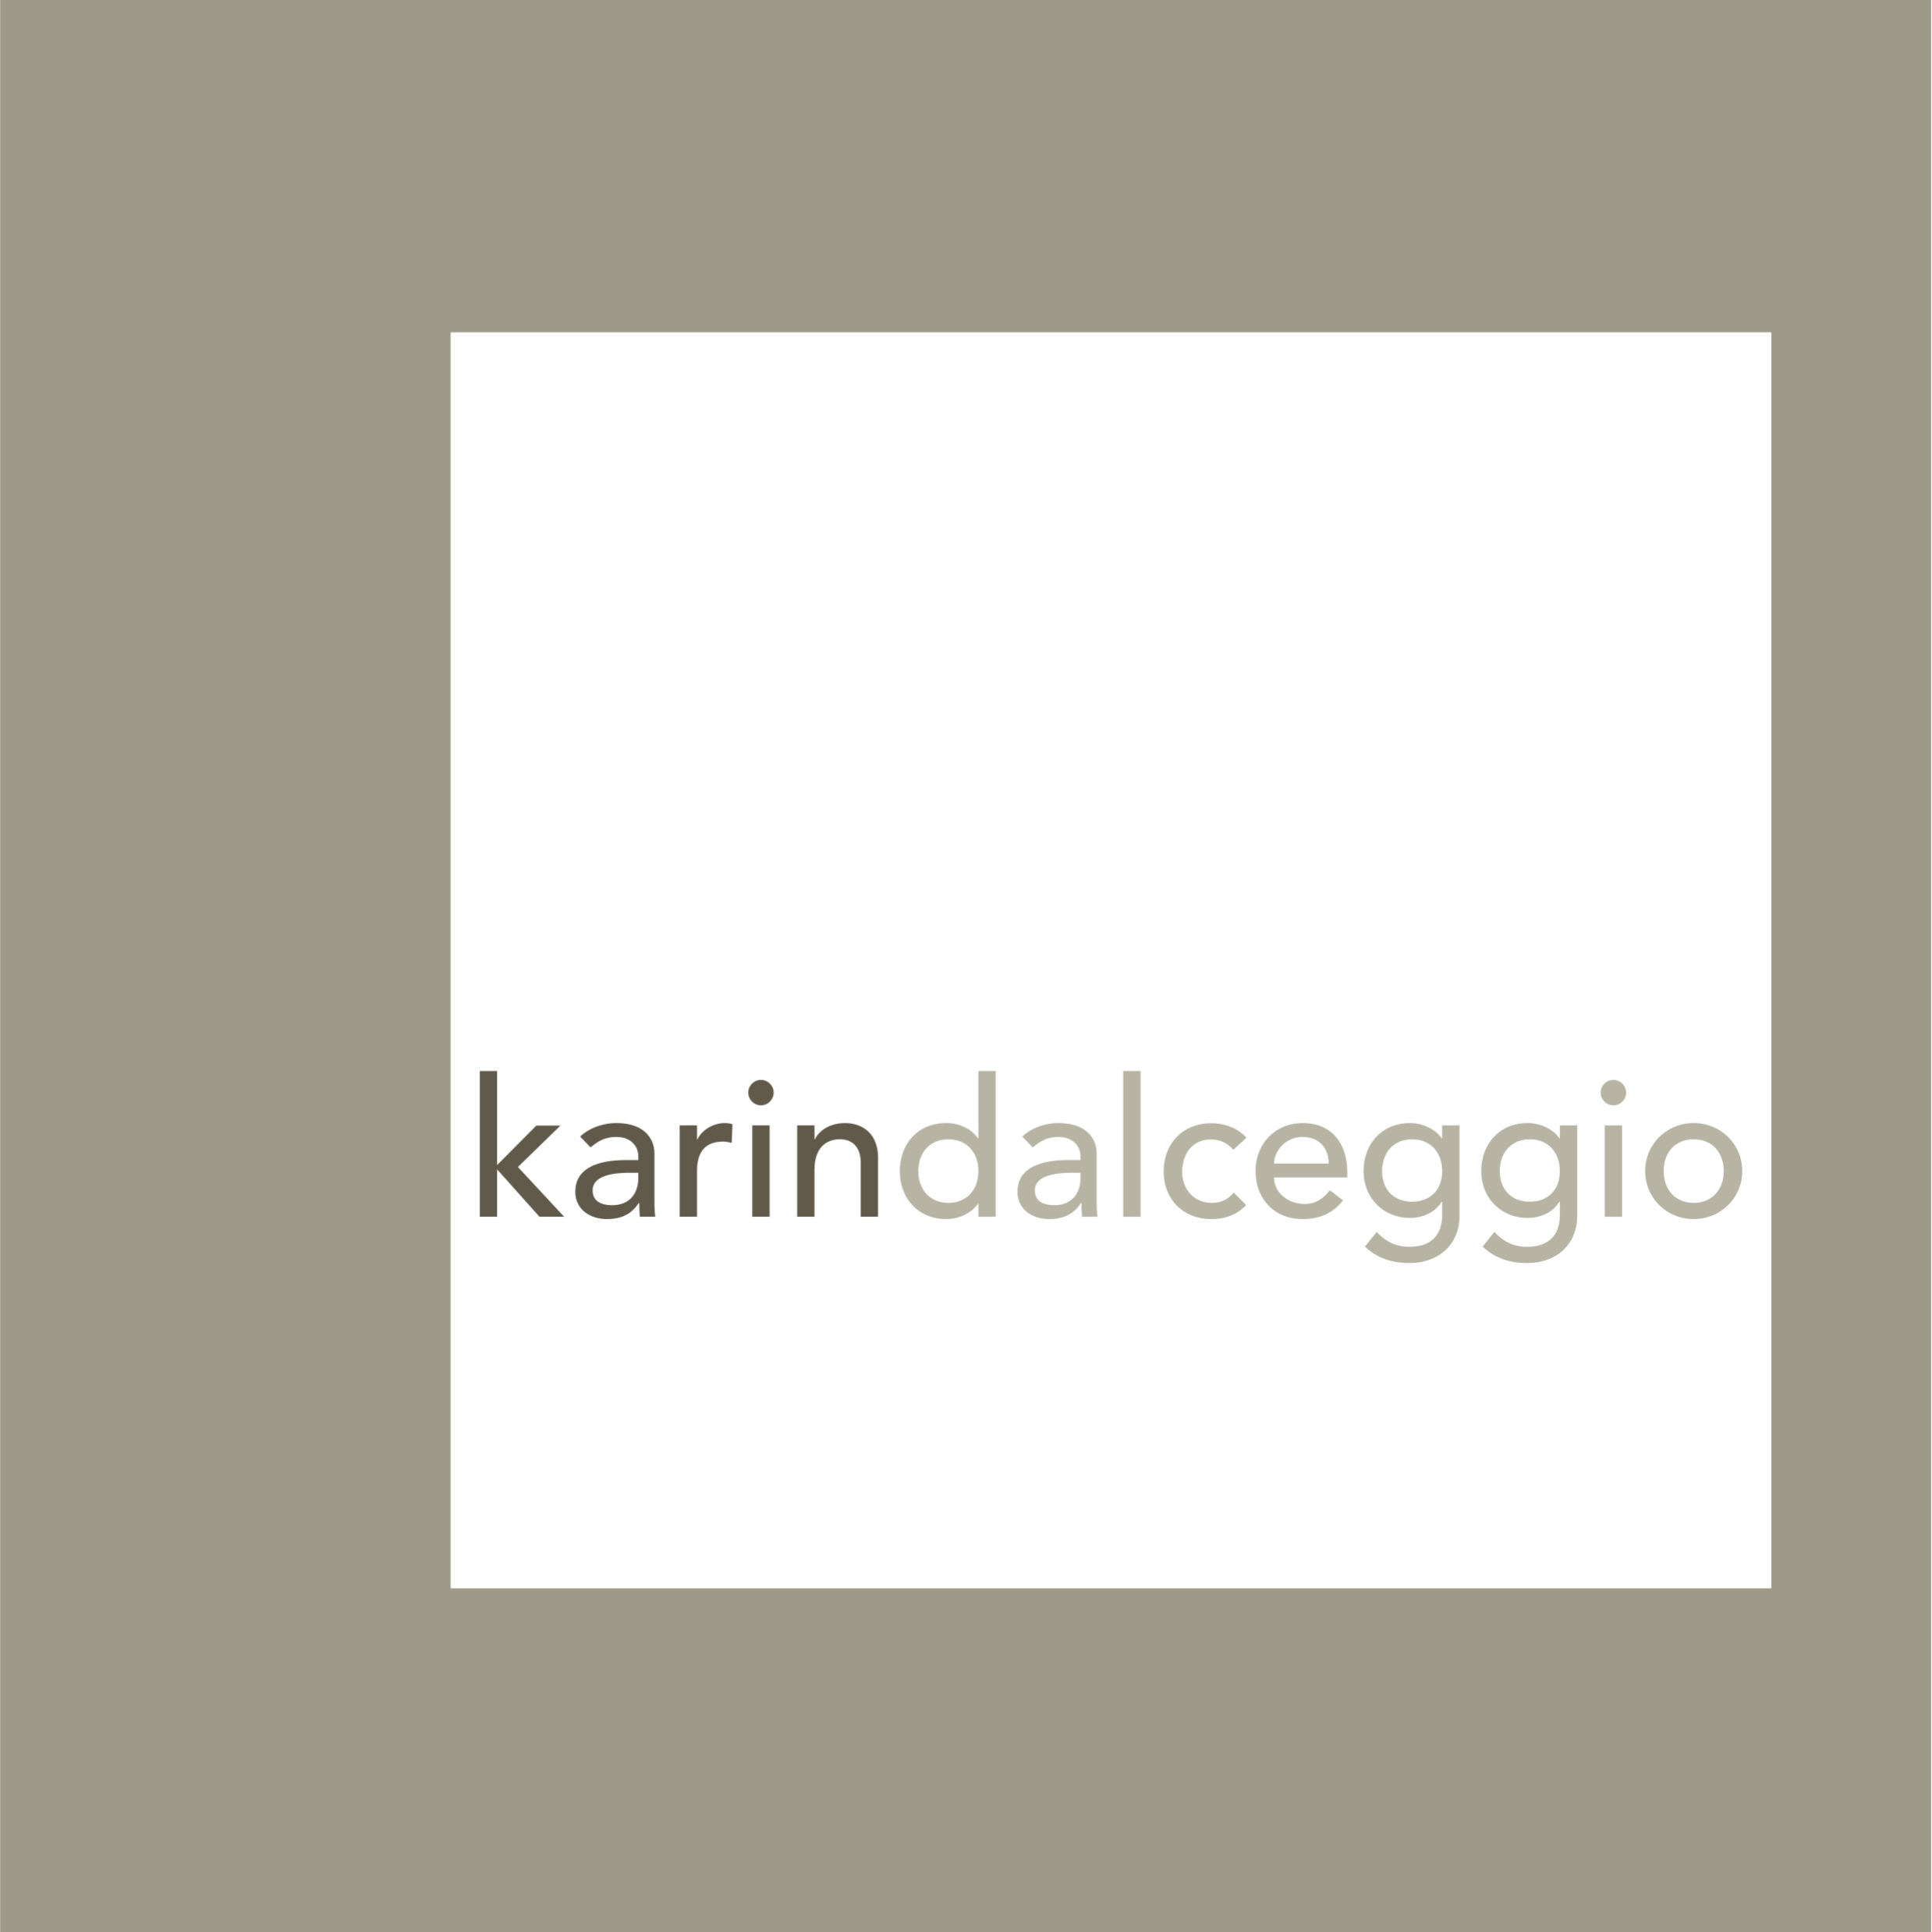 Karin Dalceggio